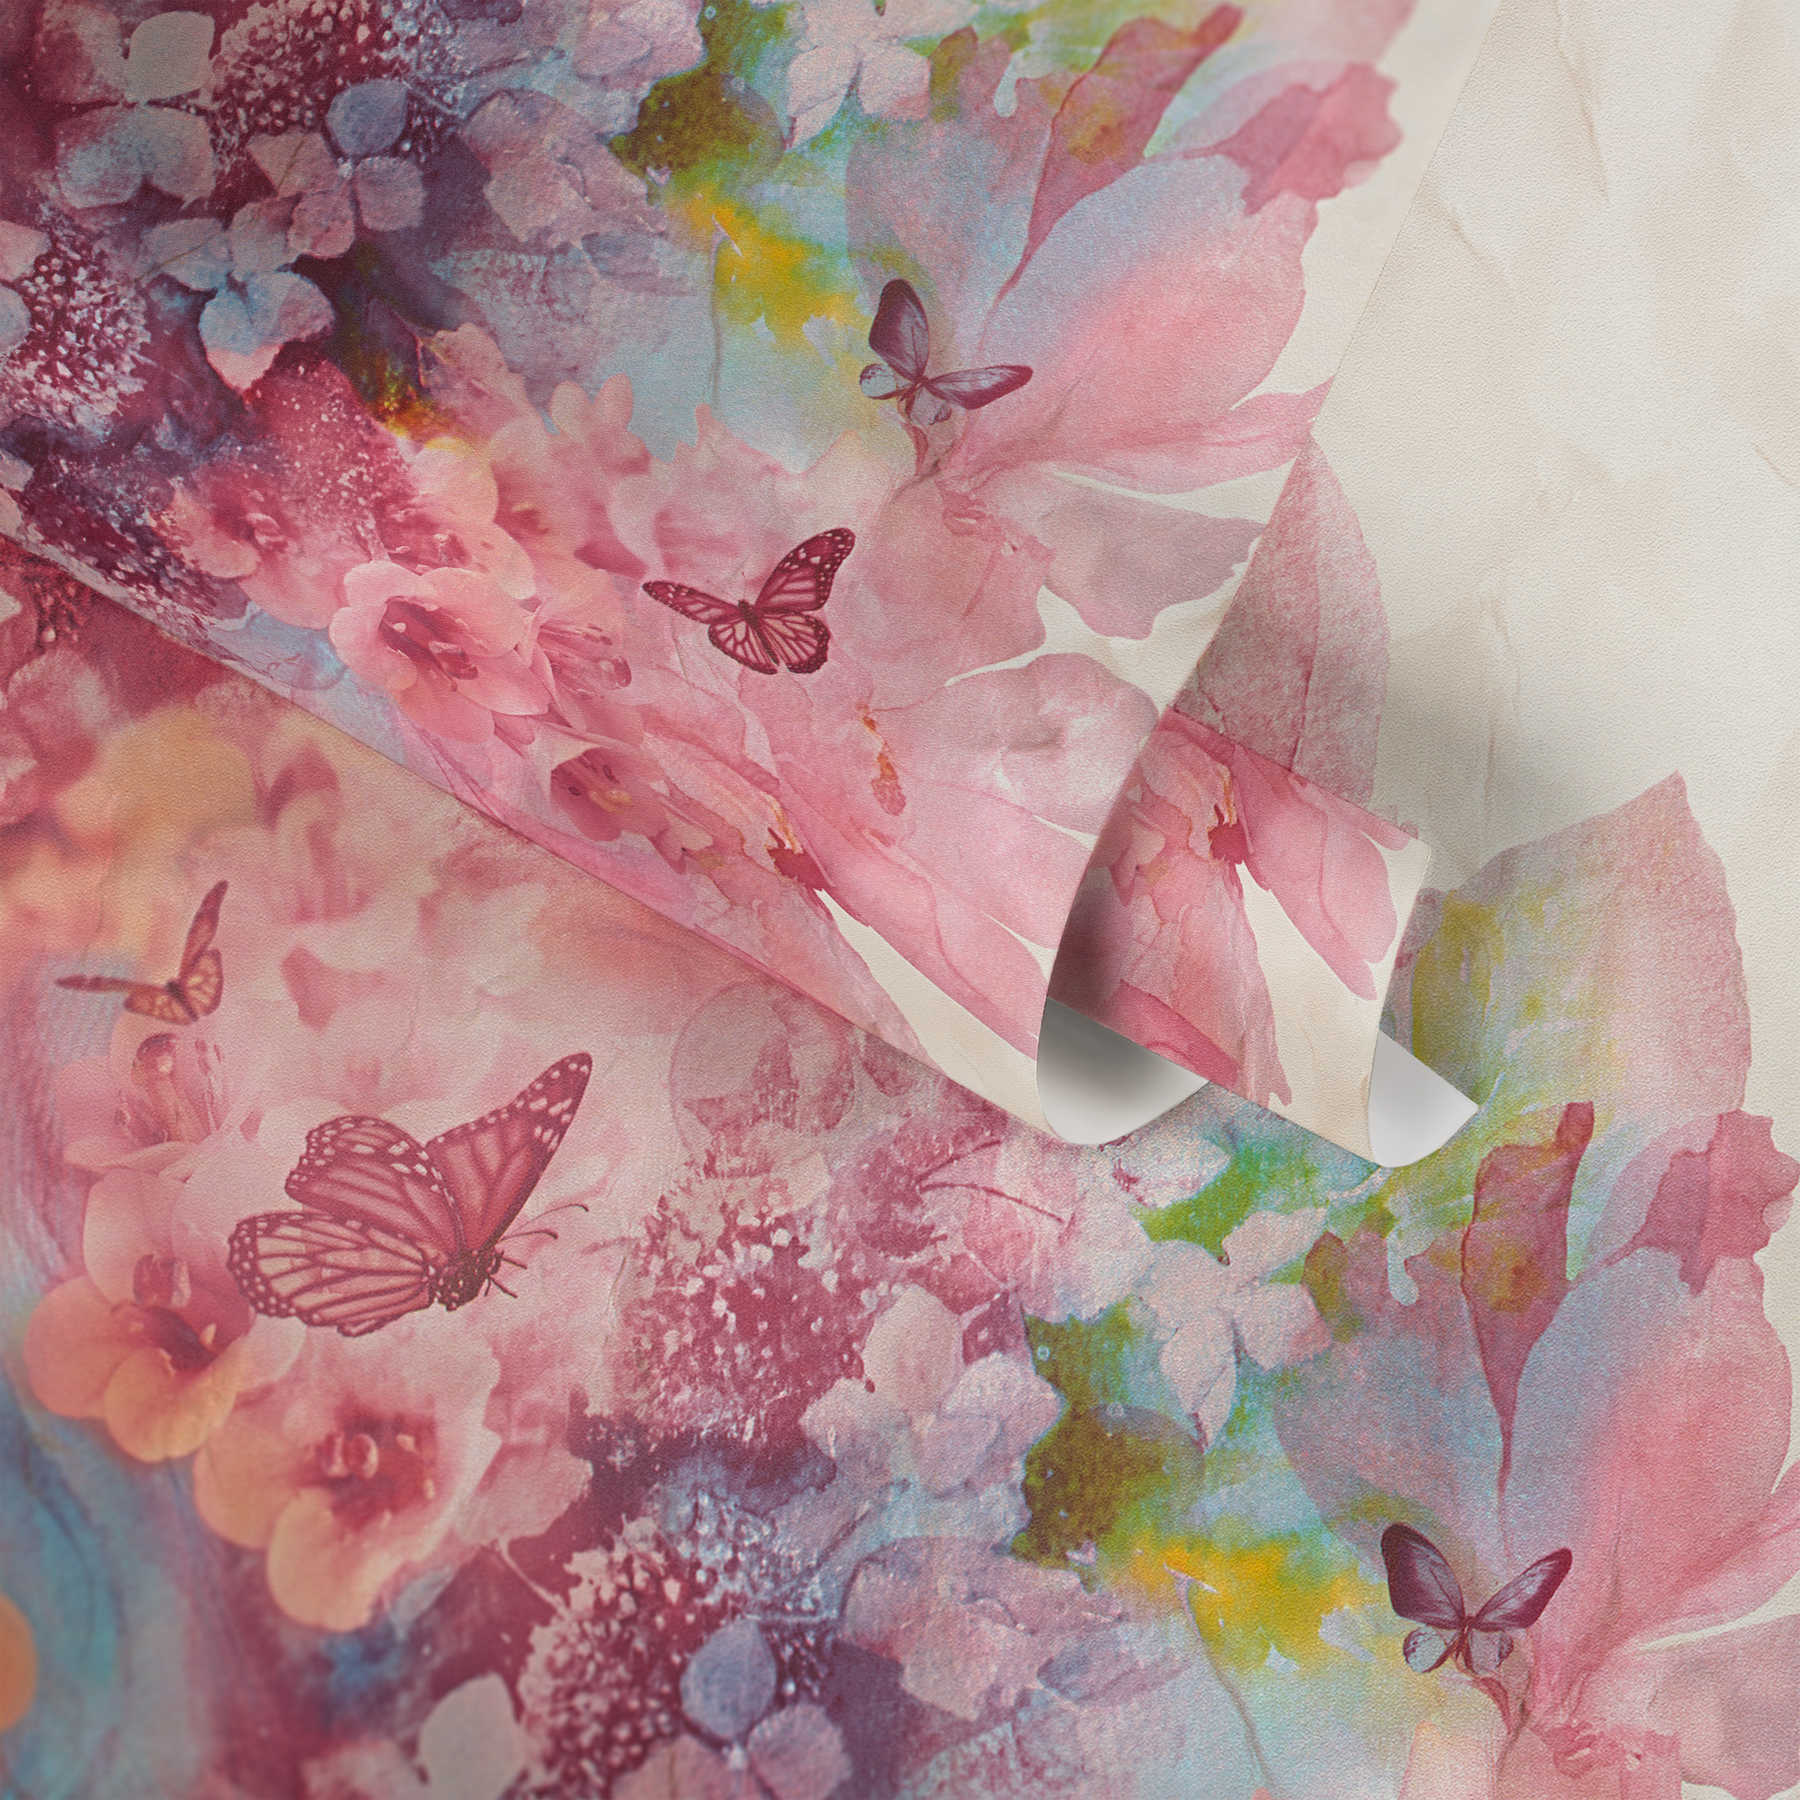             Aquarel behang met bloemen & vlinders - veelkleurig
        